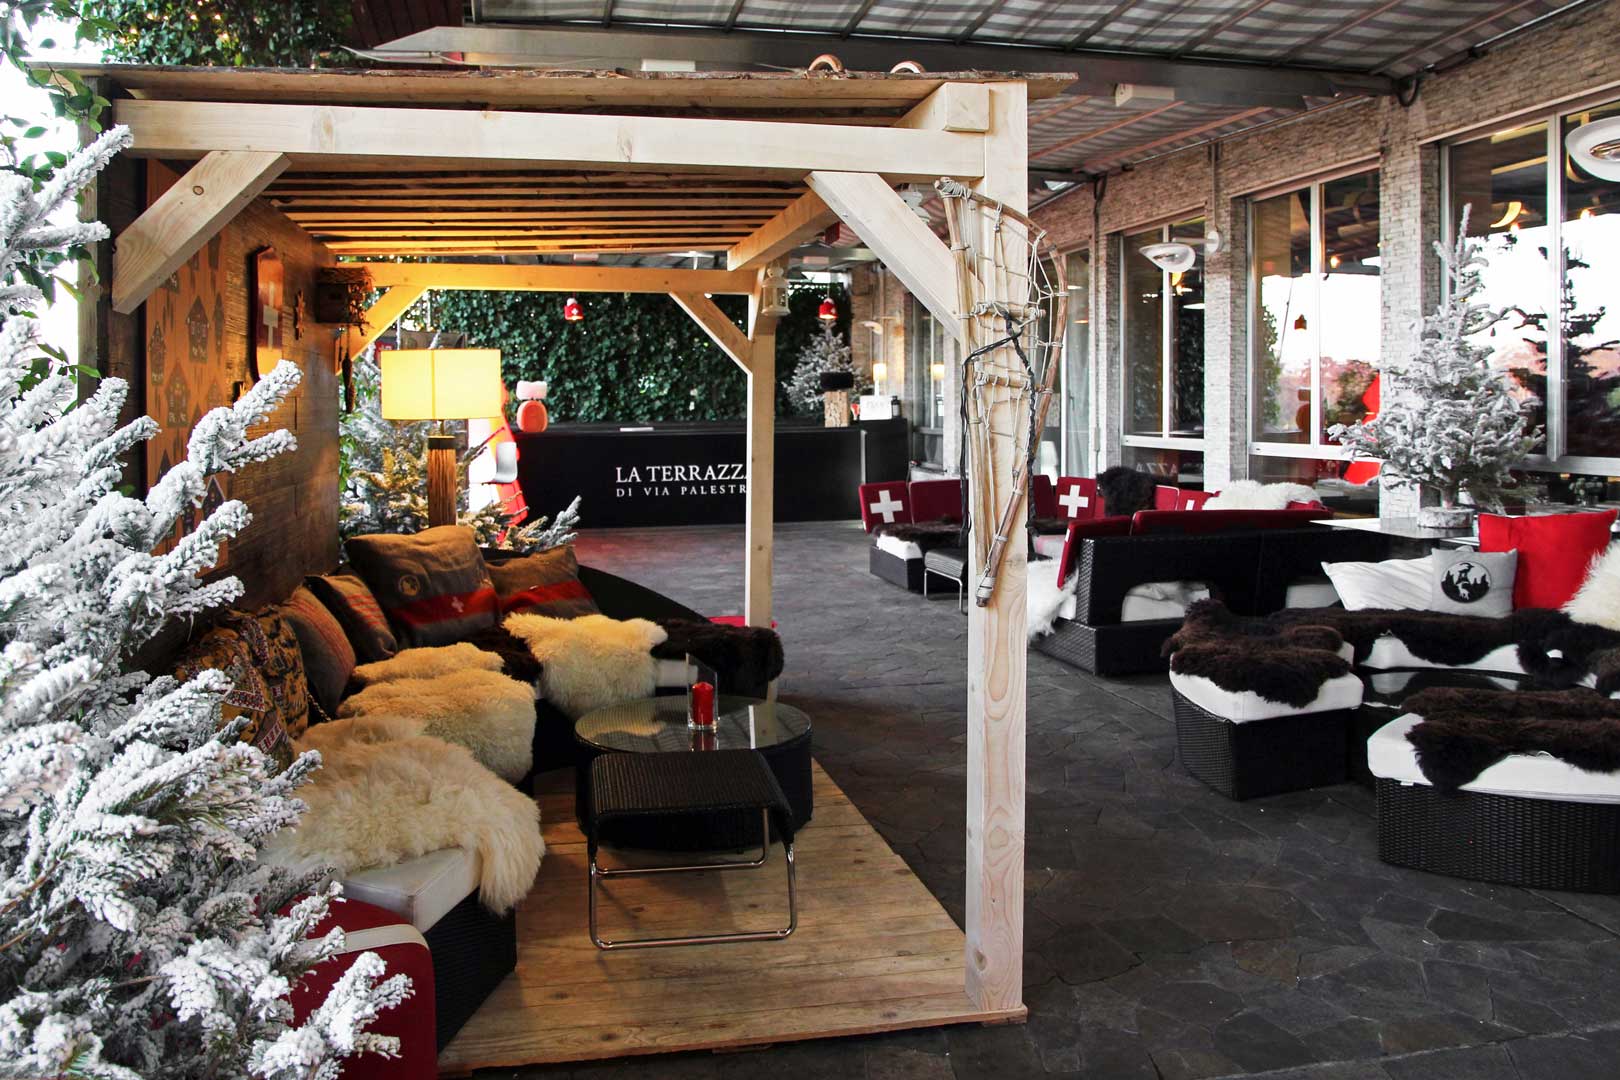 Swiss Winter Lounge – La Terrazza di via Palestro